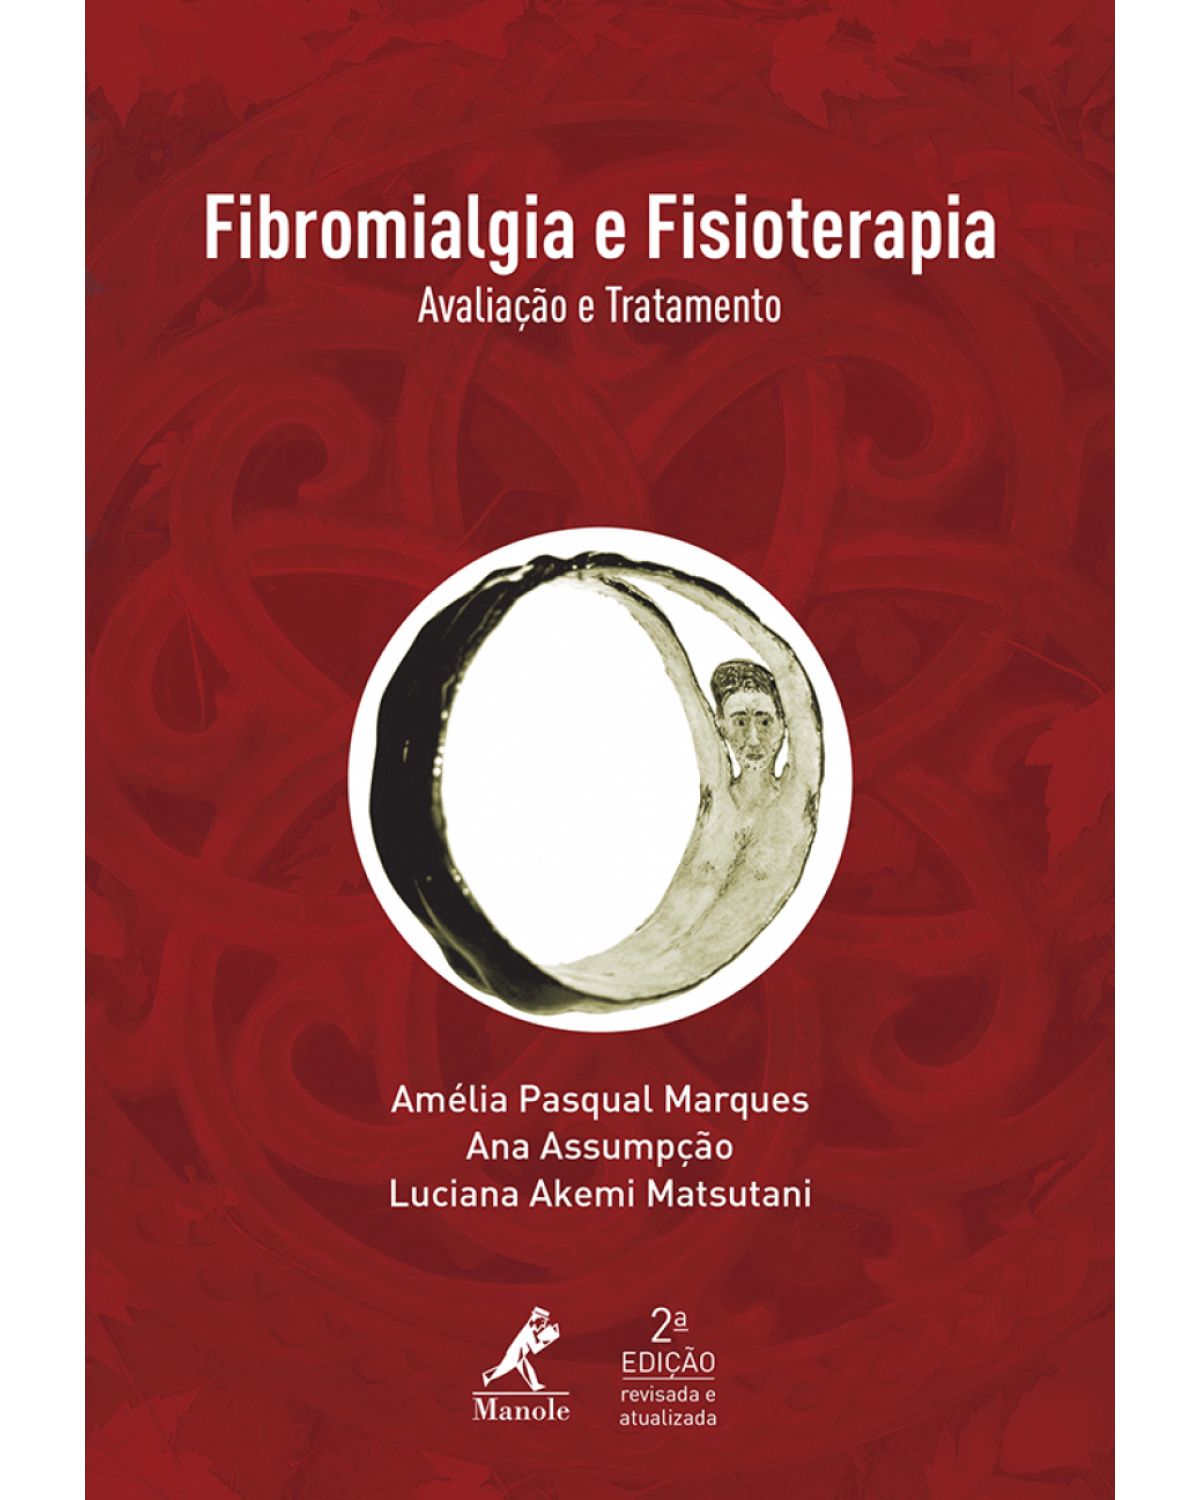 Fibromialgia e fisioterapia - Avaliação e tratamento - 2ª Edição | 2015